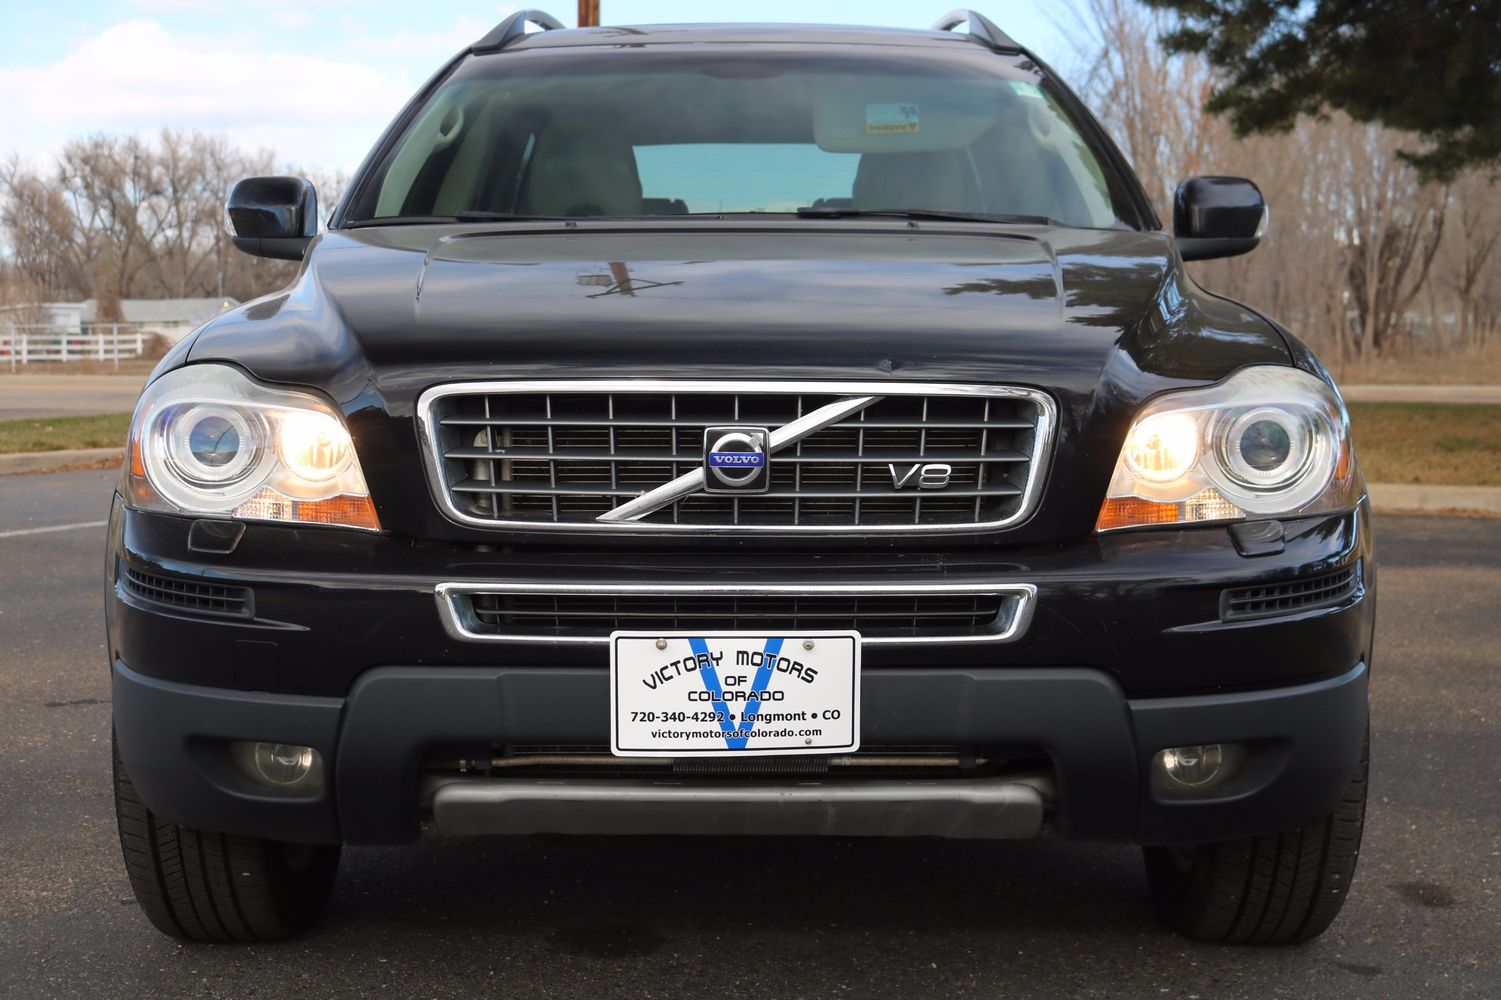 2007 Volvo XC90 V8 Victory Motors of Colorado